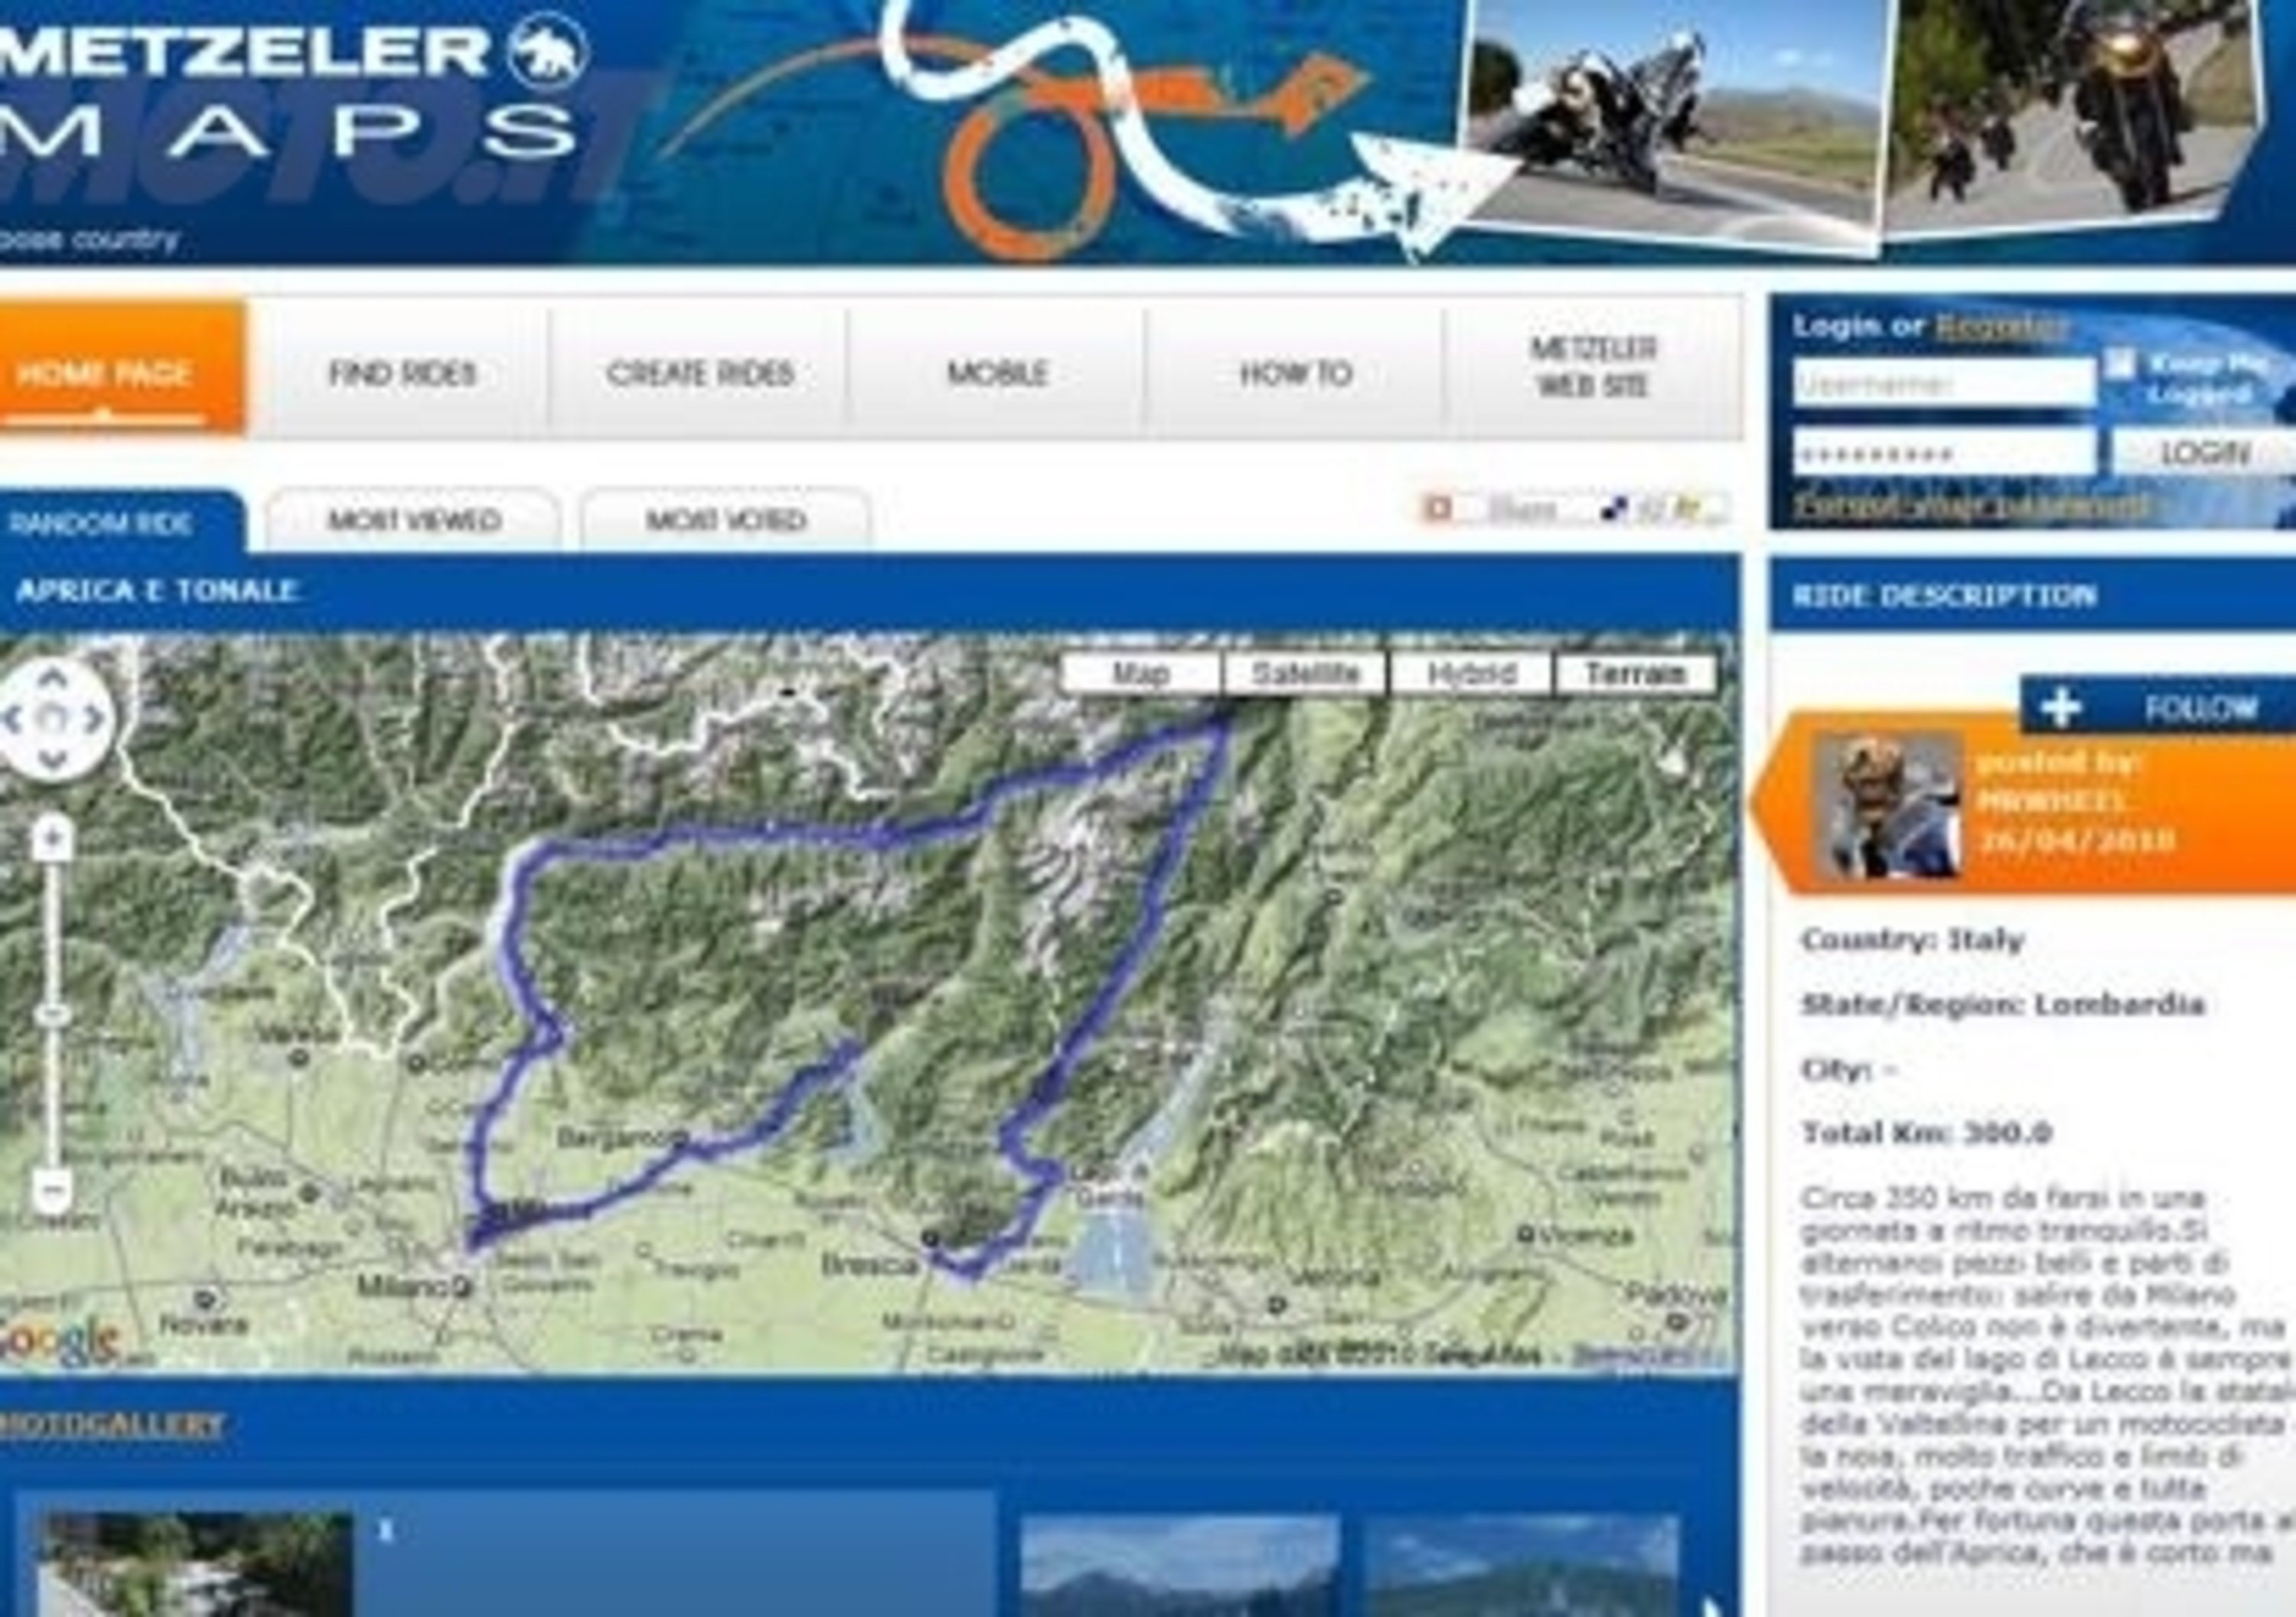 Metzeler lancia MetzelerMaps, una piattaforma di map sharing gratuita 